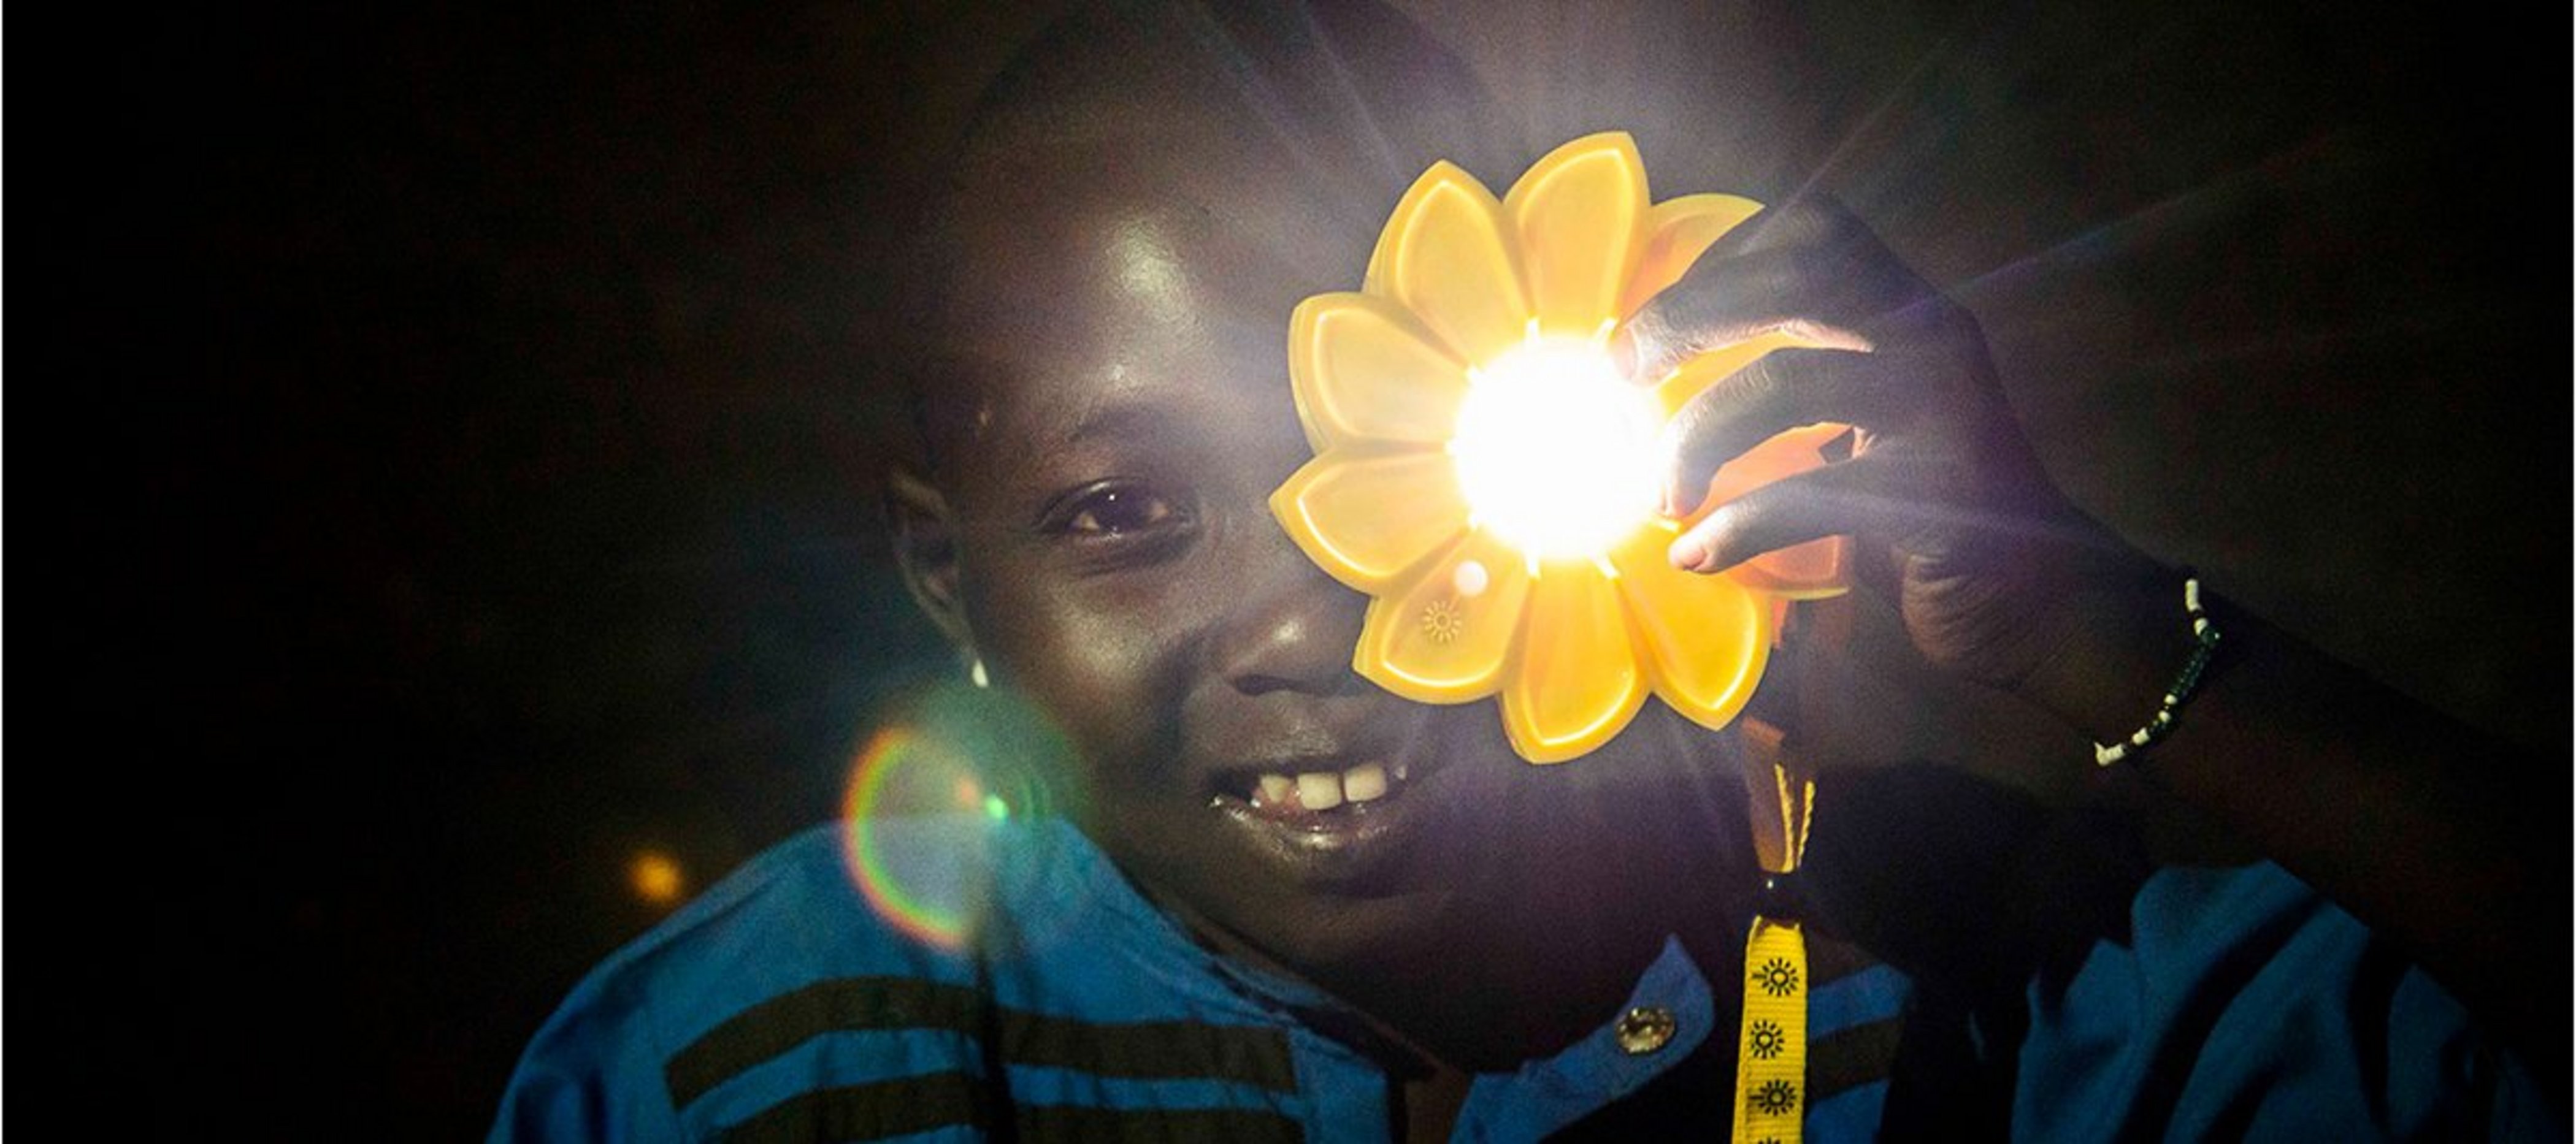 Kind hält leuchtende Little Sun-Solarlampe hoch und lächelt